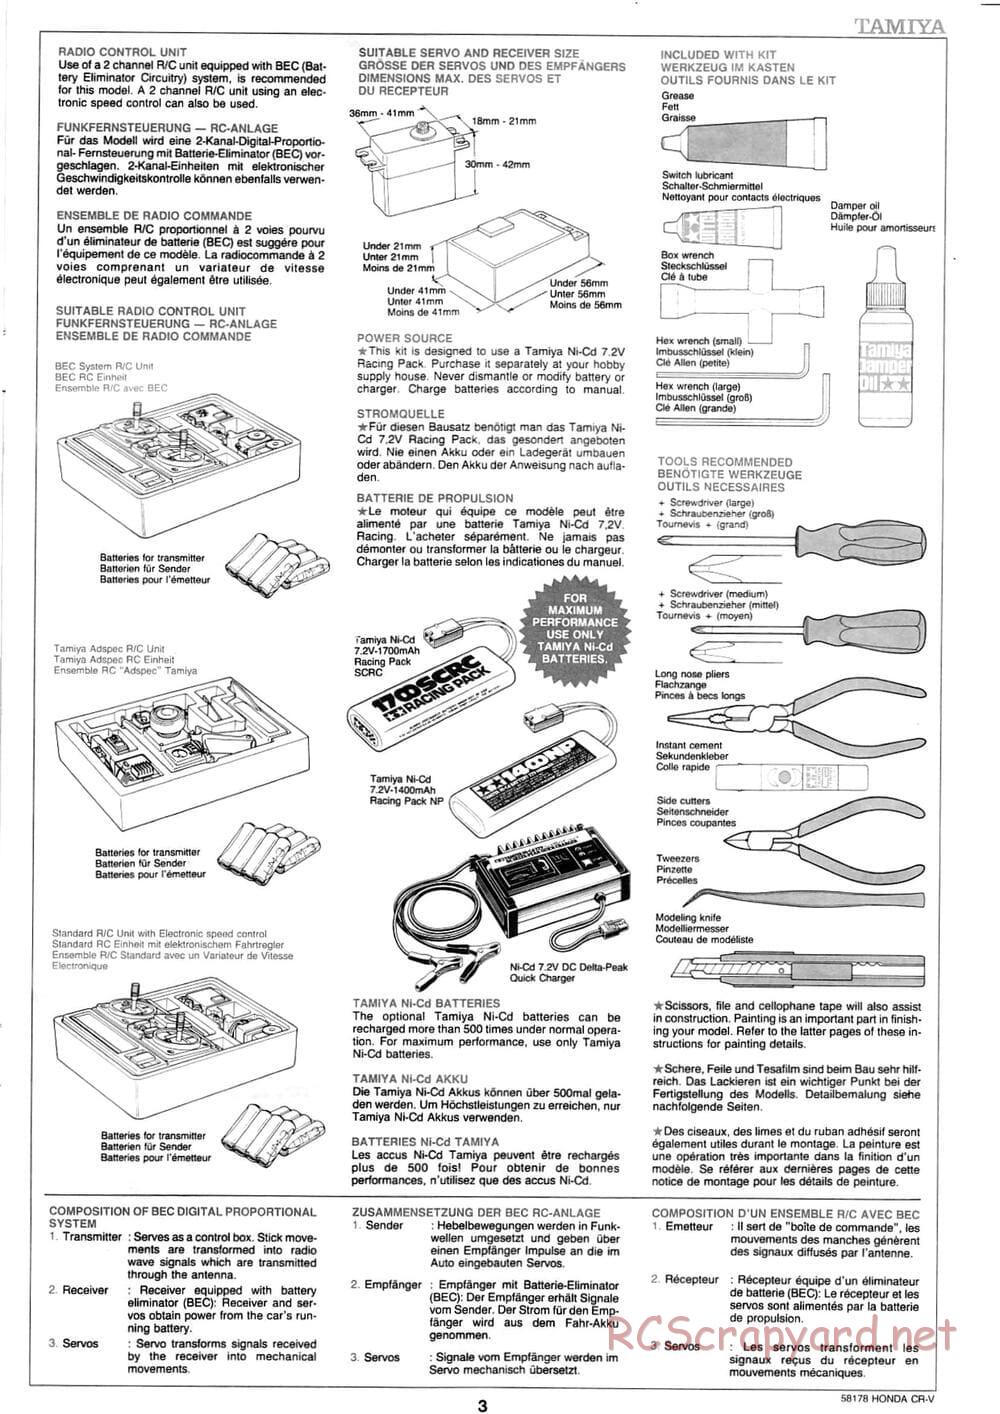 Tamiya - Honda CR-V - CC-01 Chassis - Manual - Page 3